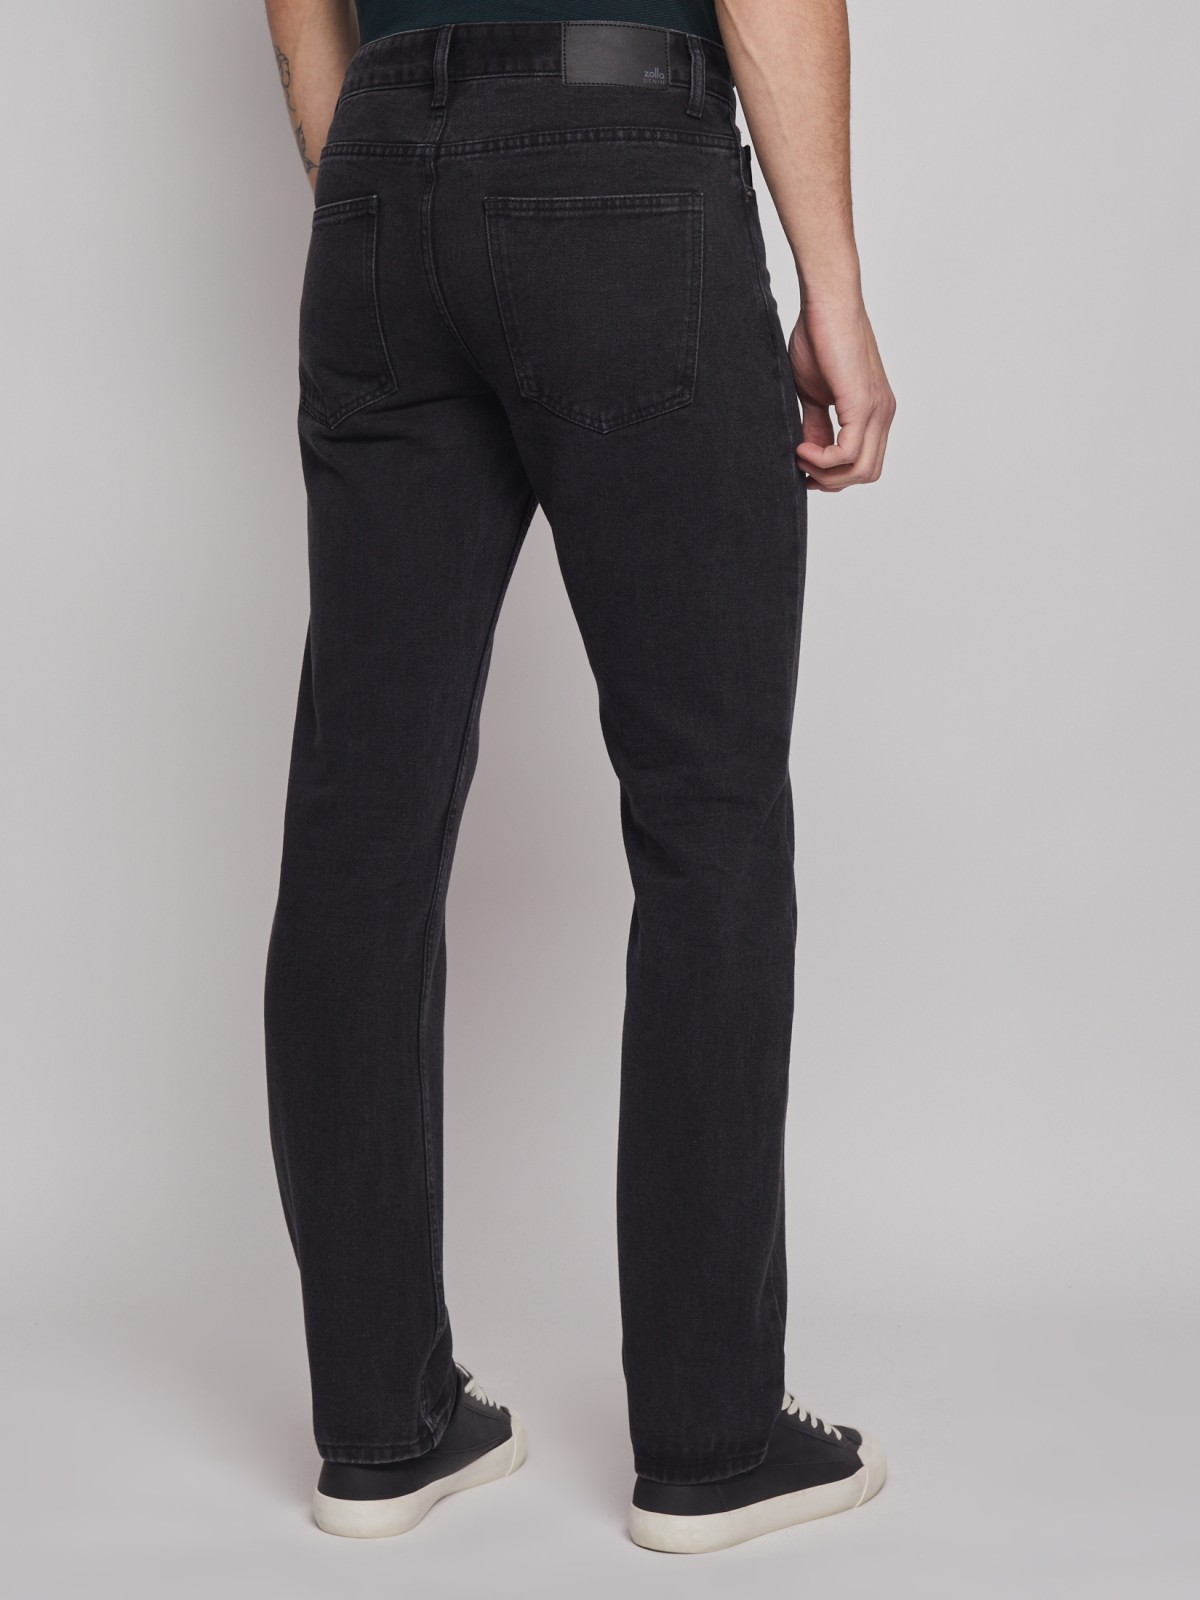 Брюки джинсовые zolla 01312711R062, цвет черный, размер 31 - фото 5